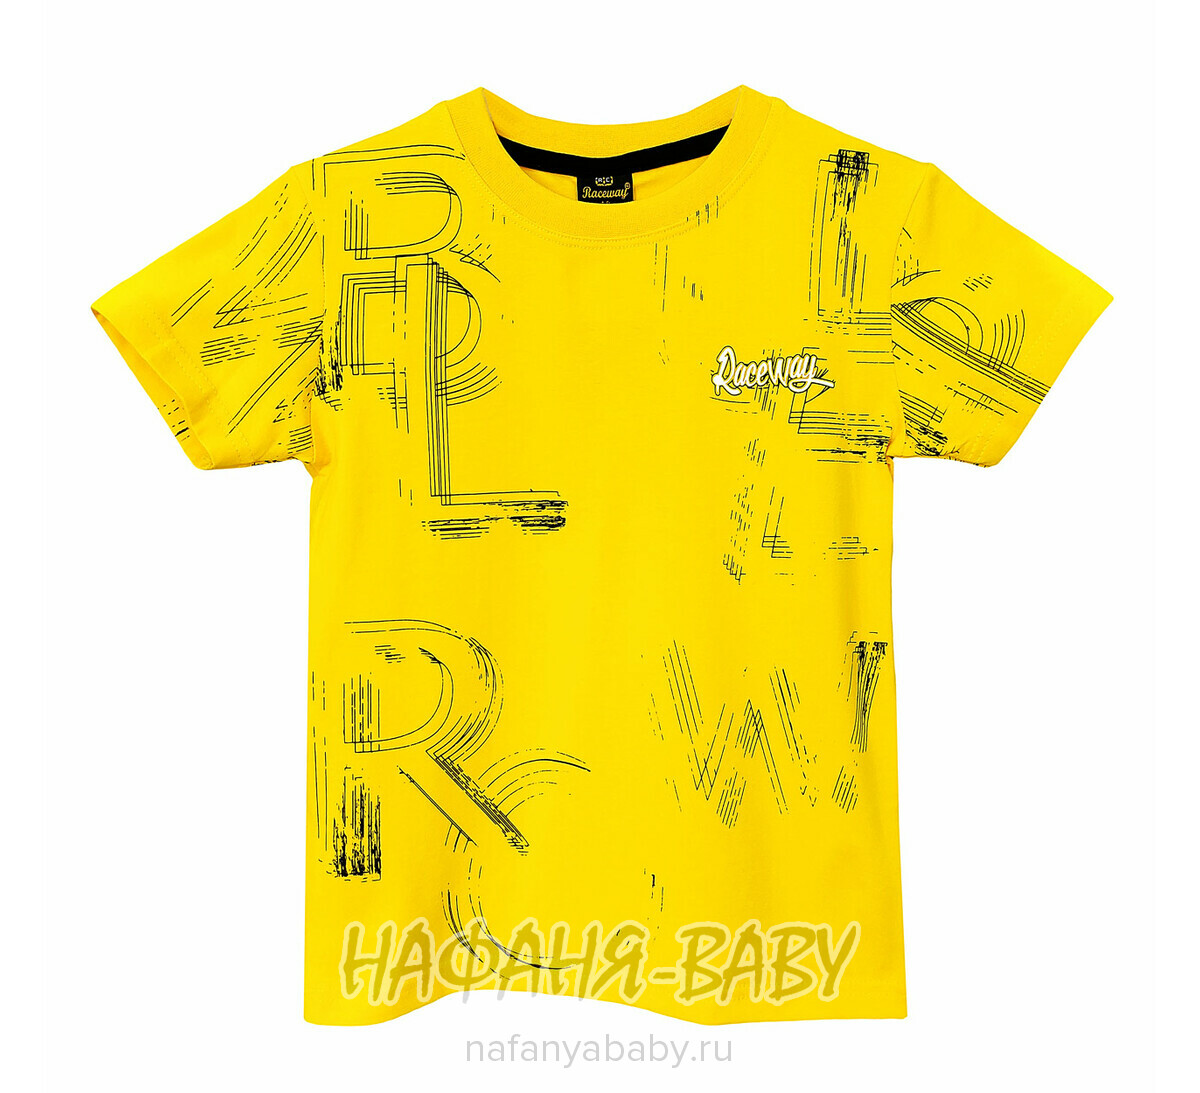 Подростковая футболка RCW арт. 5829, 10-14 лет, цвет желтый, оптом Турция